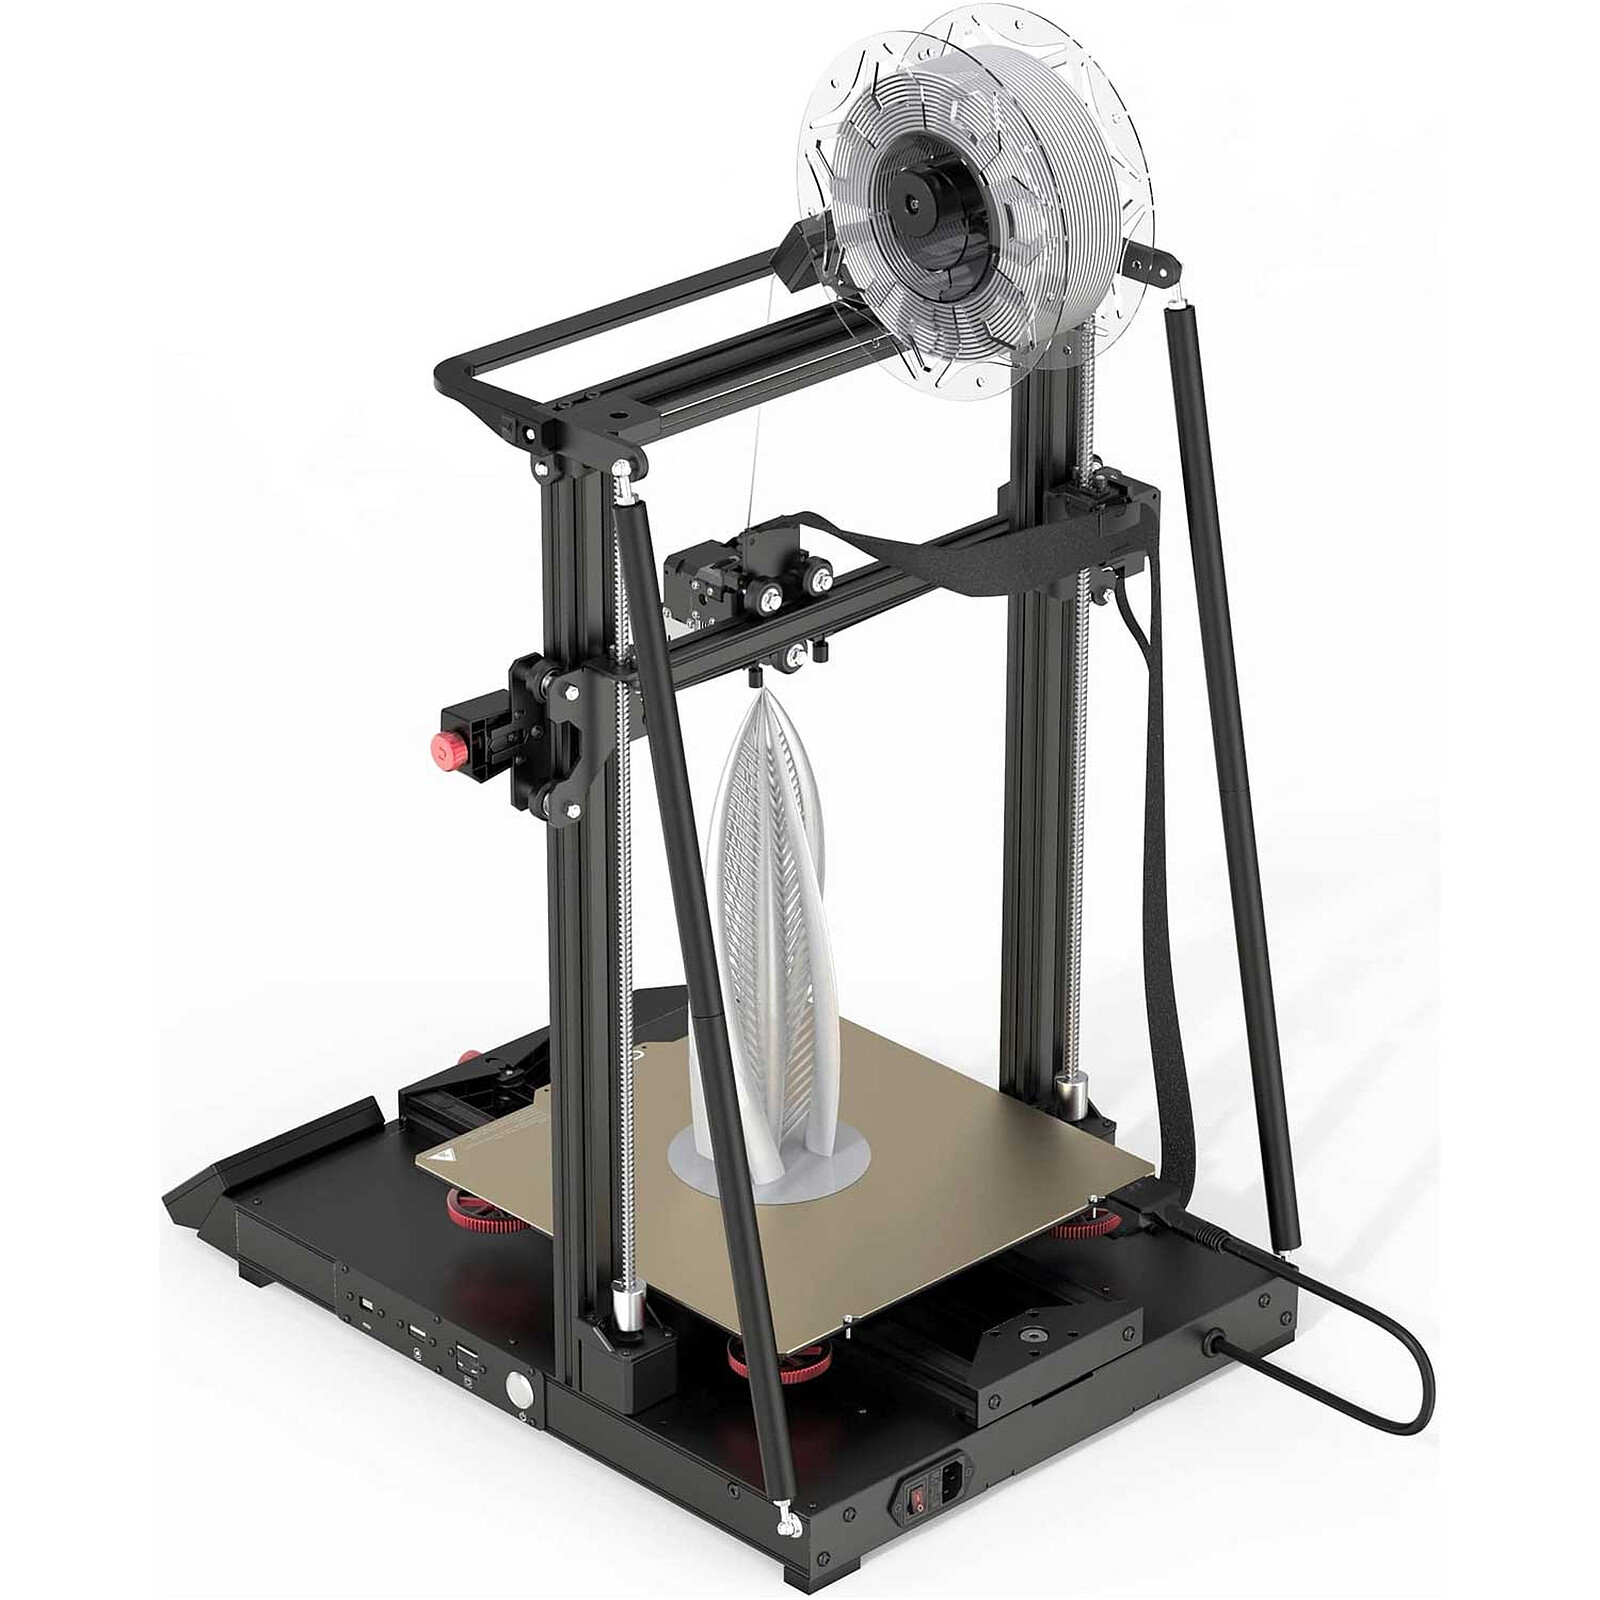 Imprimante 3D Creality CR-10 : caractéristiques, prix, tests, etc.